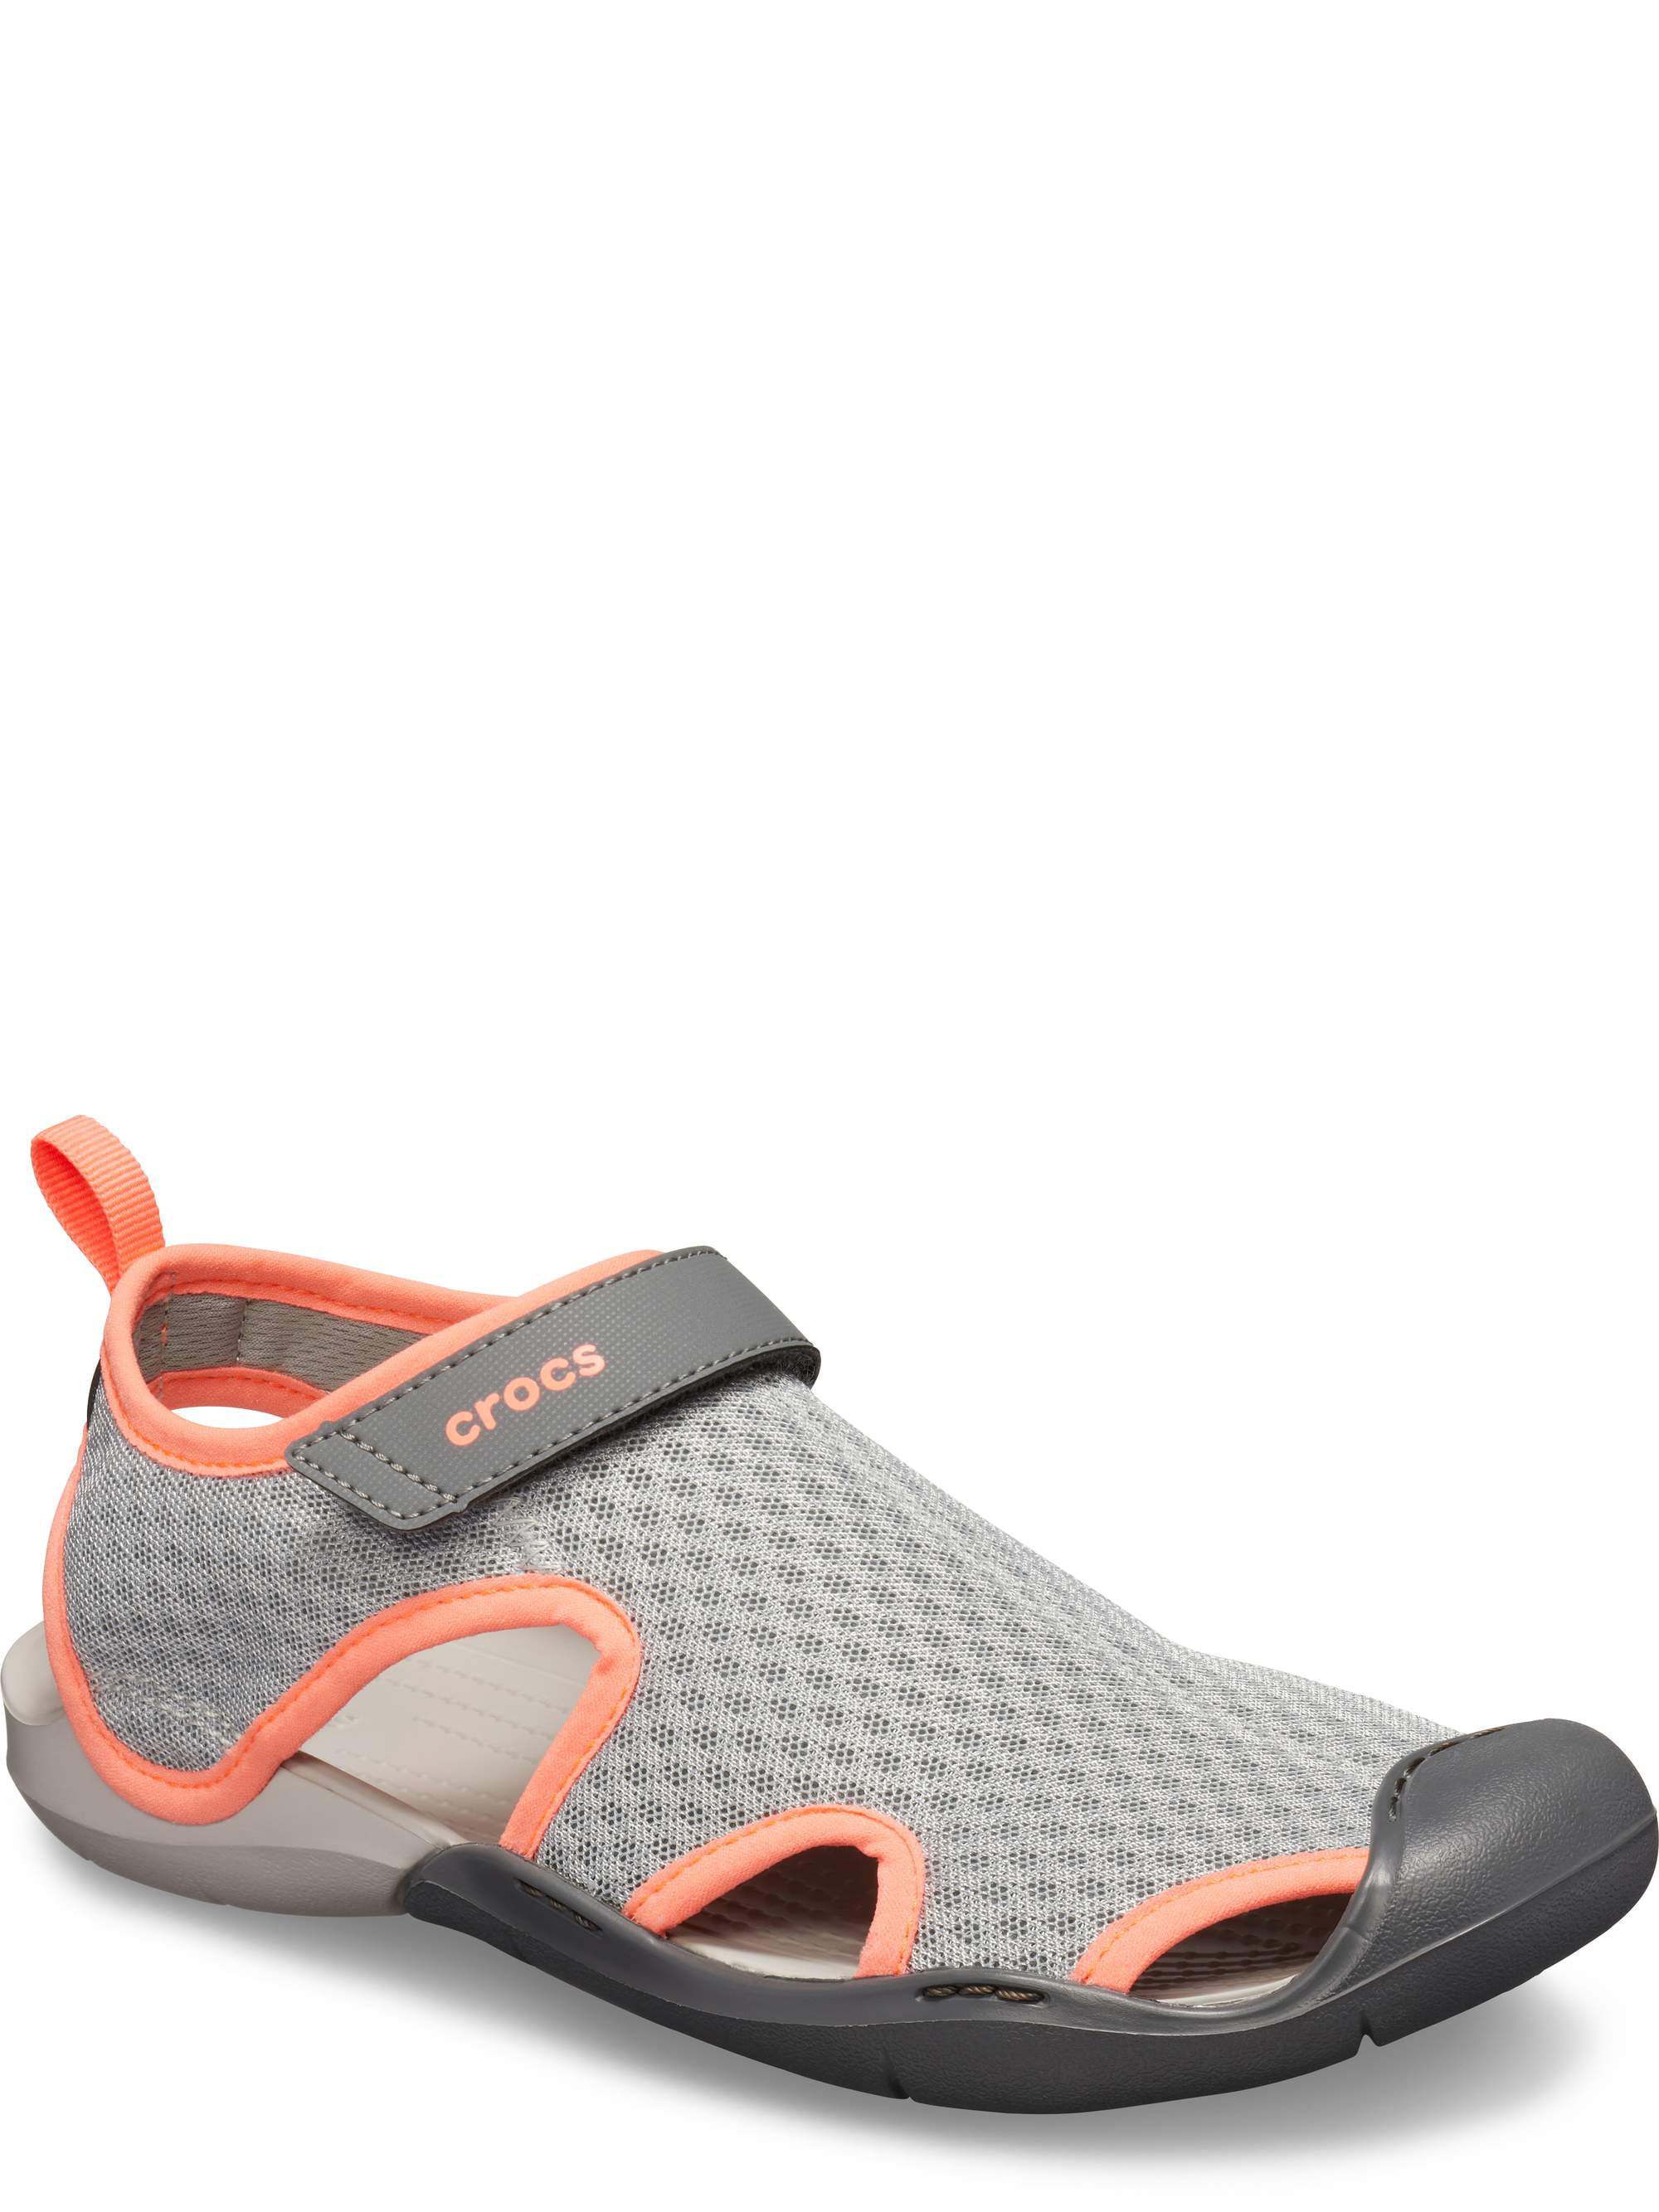 crocs swiftwater women's mesh sandals